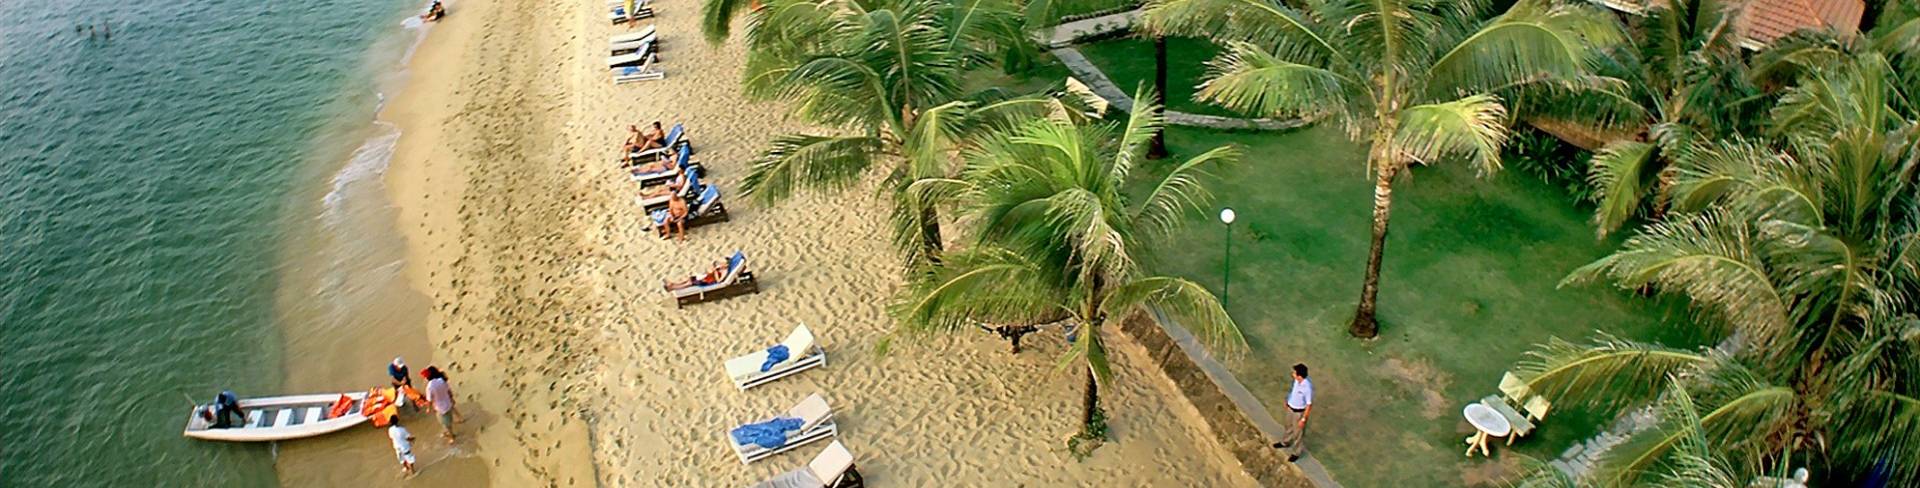 Вунг Тау - пляжный курорт во Вьетнаме